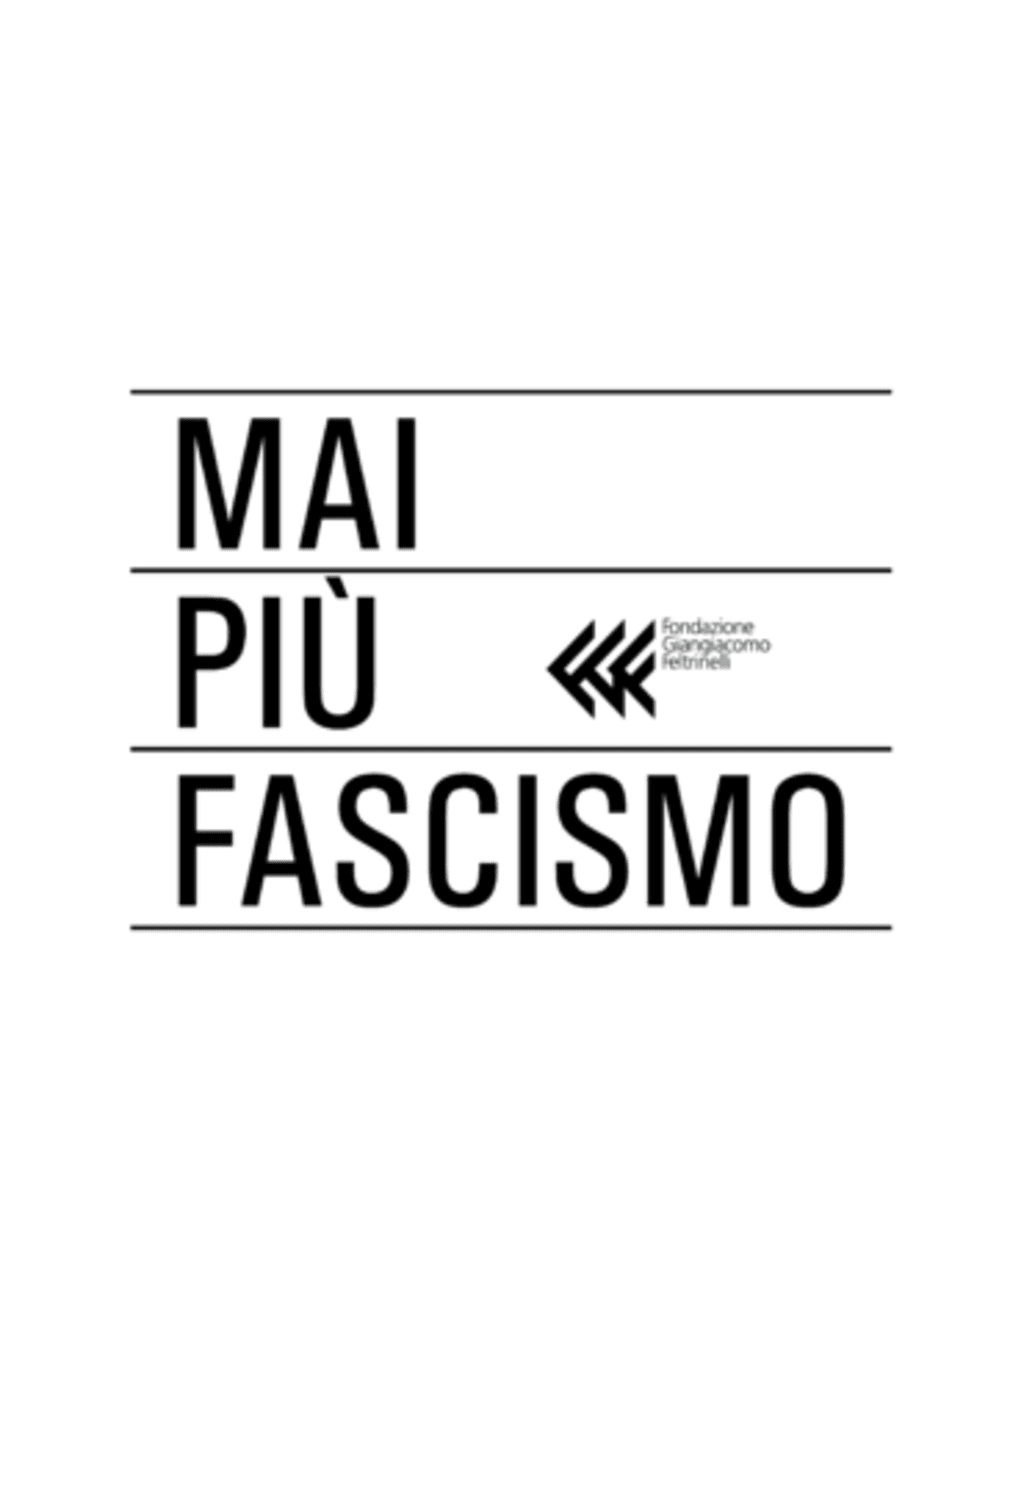 #maipiùfascismo